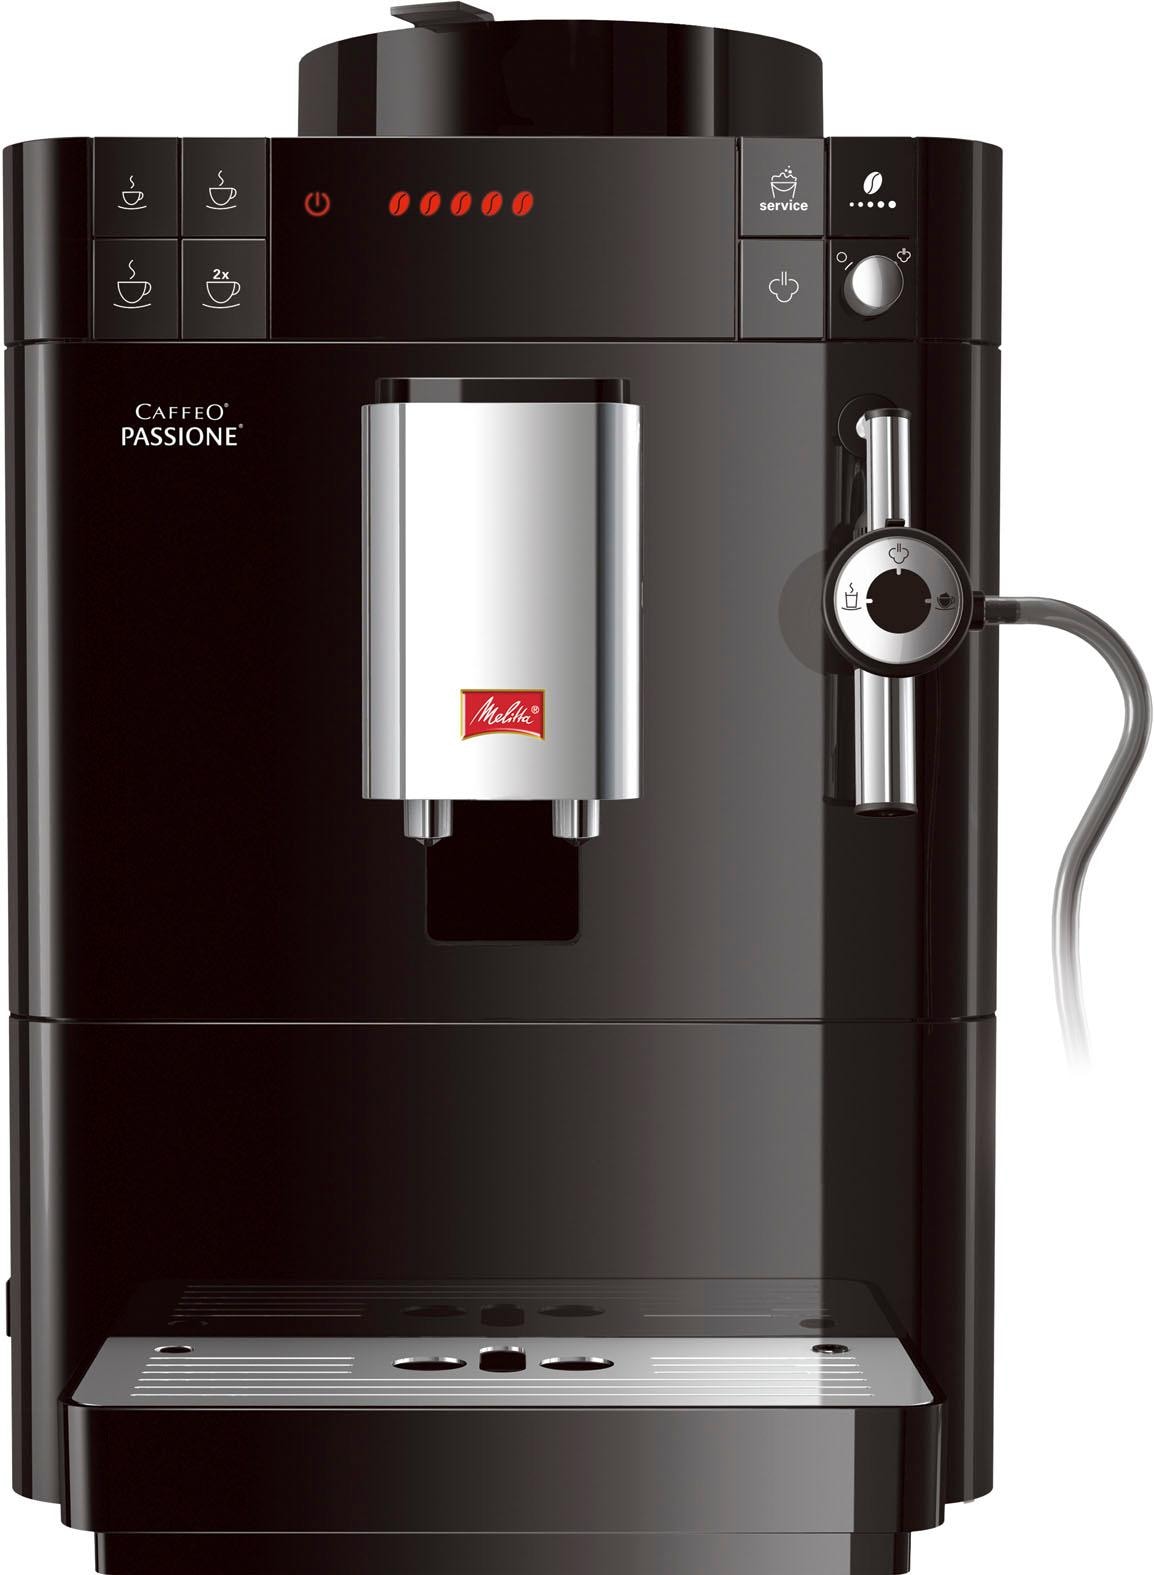 Melitta Kaffeevollautomat »Passione® für mit Entkalkung Jahren F53/0-102 XXL frisch Garantie Tassengenau & Service-Taste schwarz«, 3 gemahlen, Reinigung